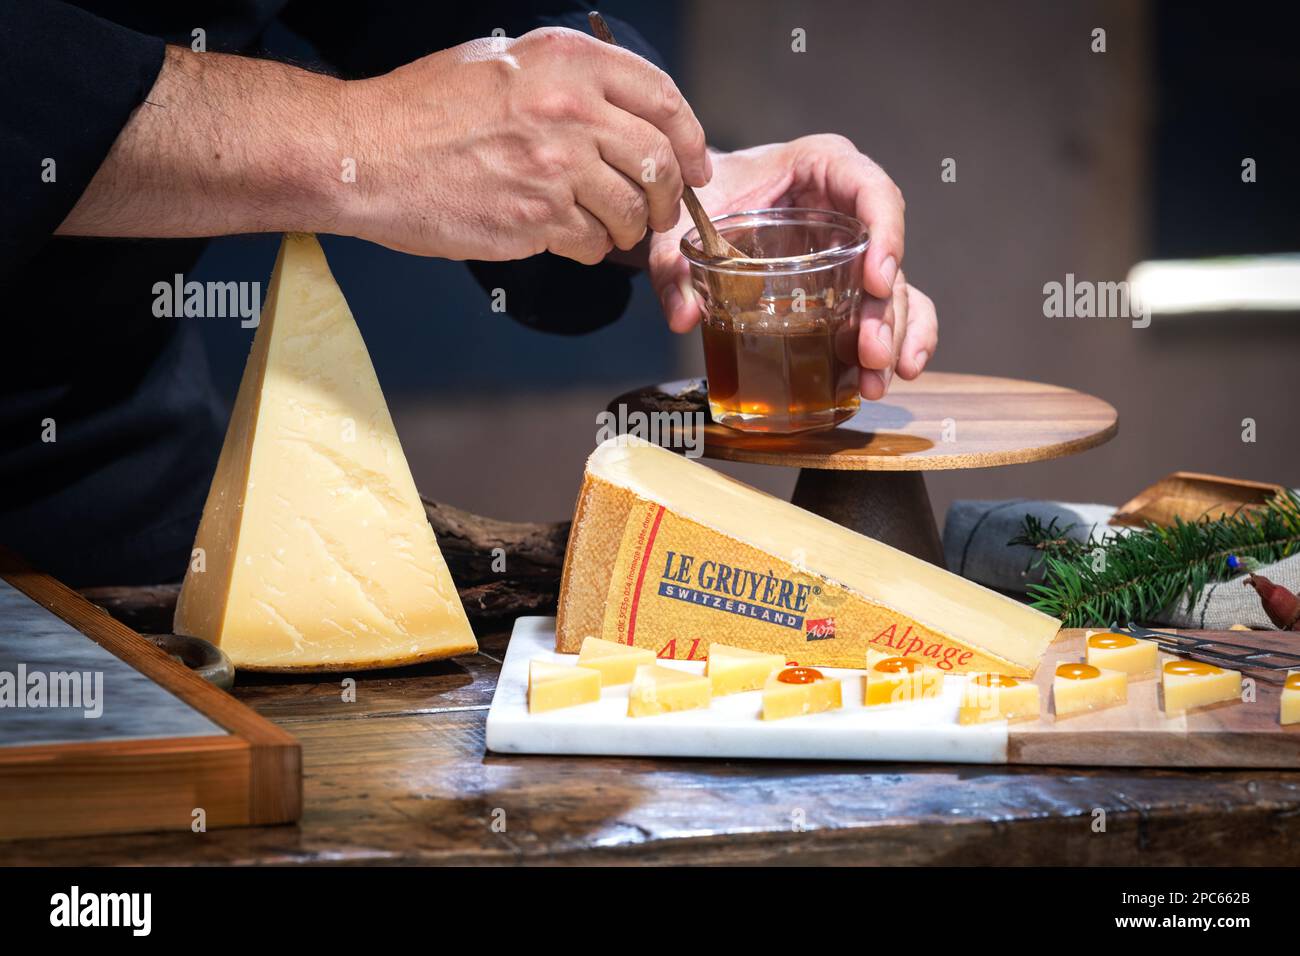 12 juillet 2022, Lyon, France : célèbre fromage suisse goûté : le Gruyère d'Alpage au miel pour le déjeuner et l'expérience gastronomique Banque D'Images